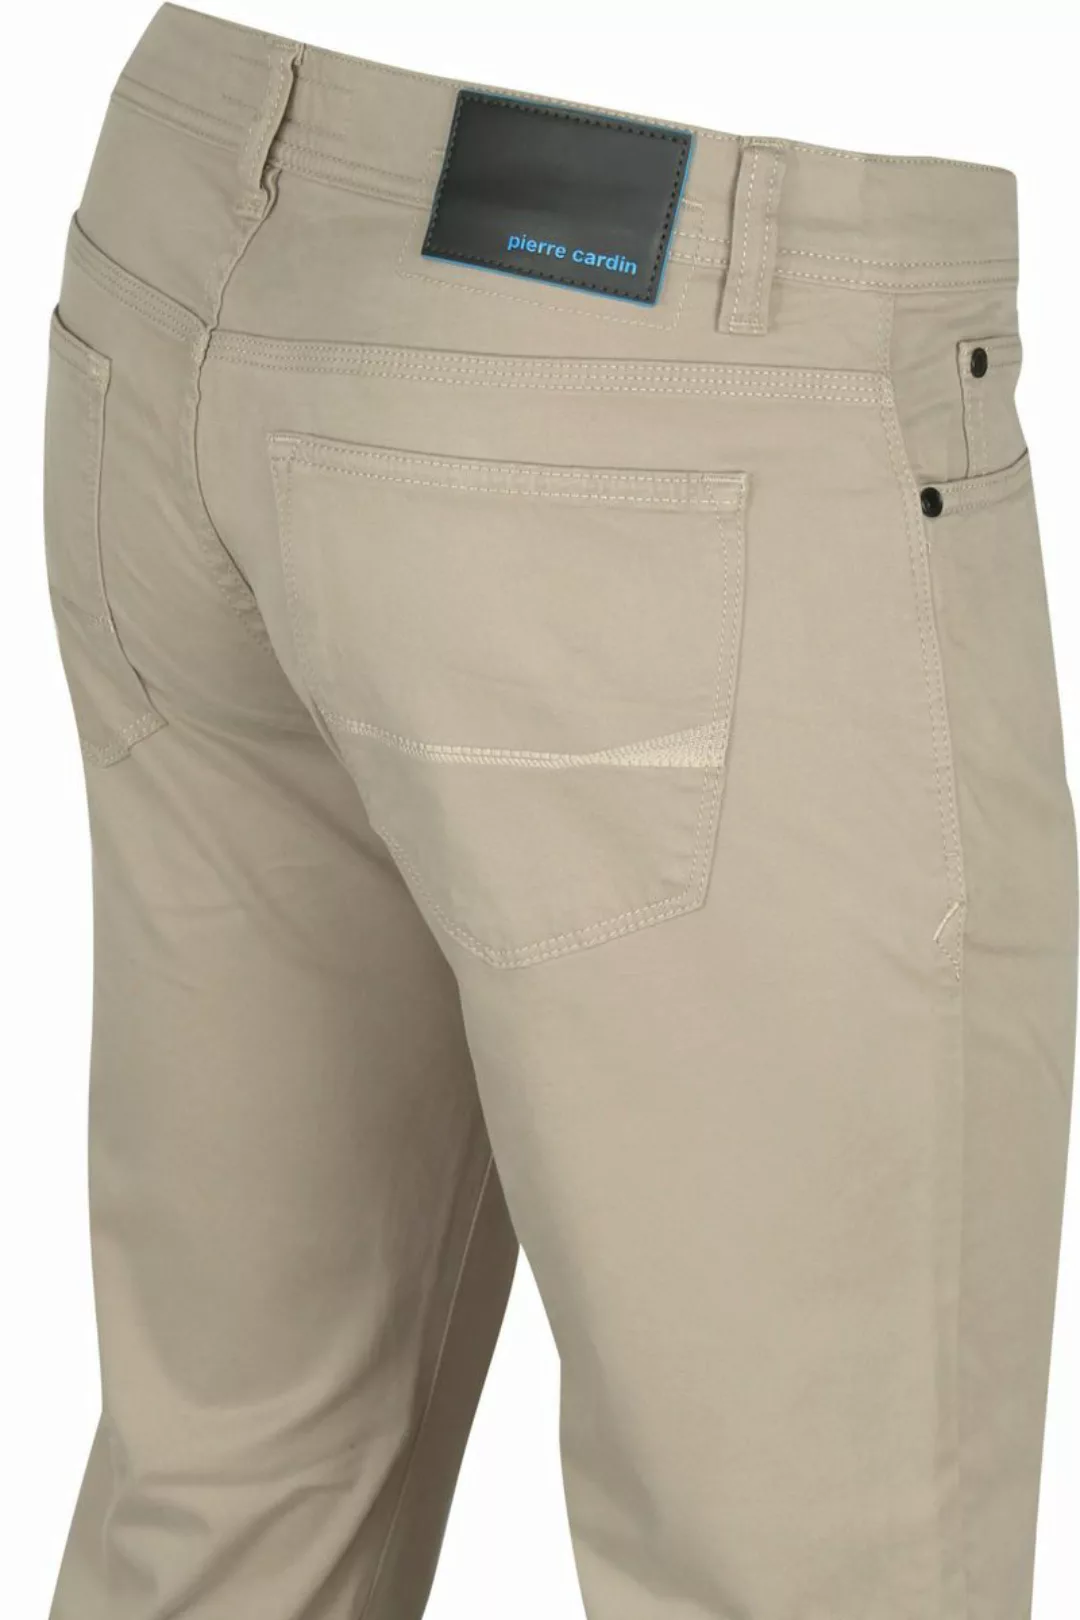 Pierre Cardin Antibes 5 Pocket Hose Khaki - Größe W 36 - L 34 günstig online kaufen